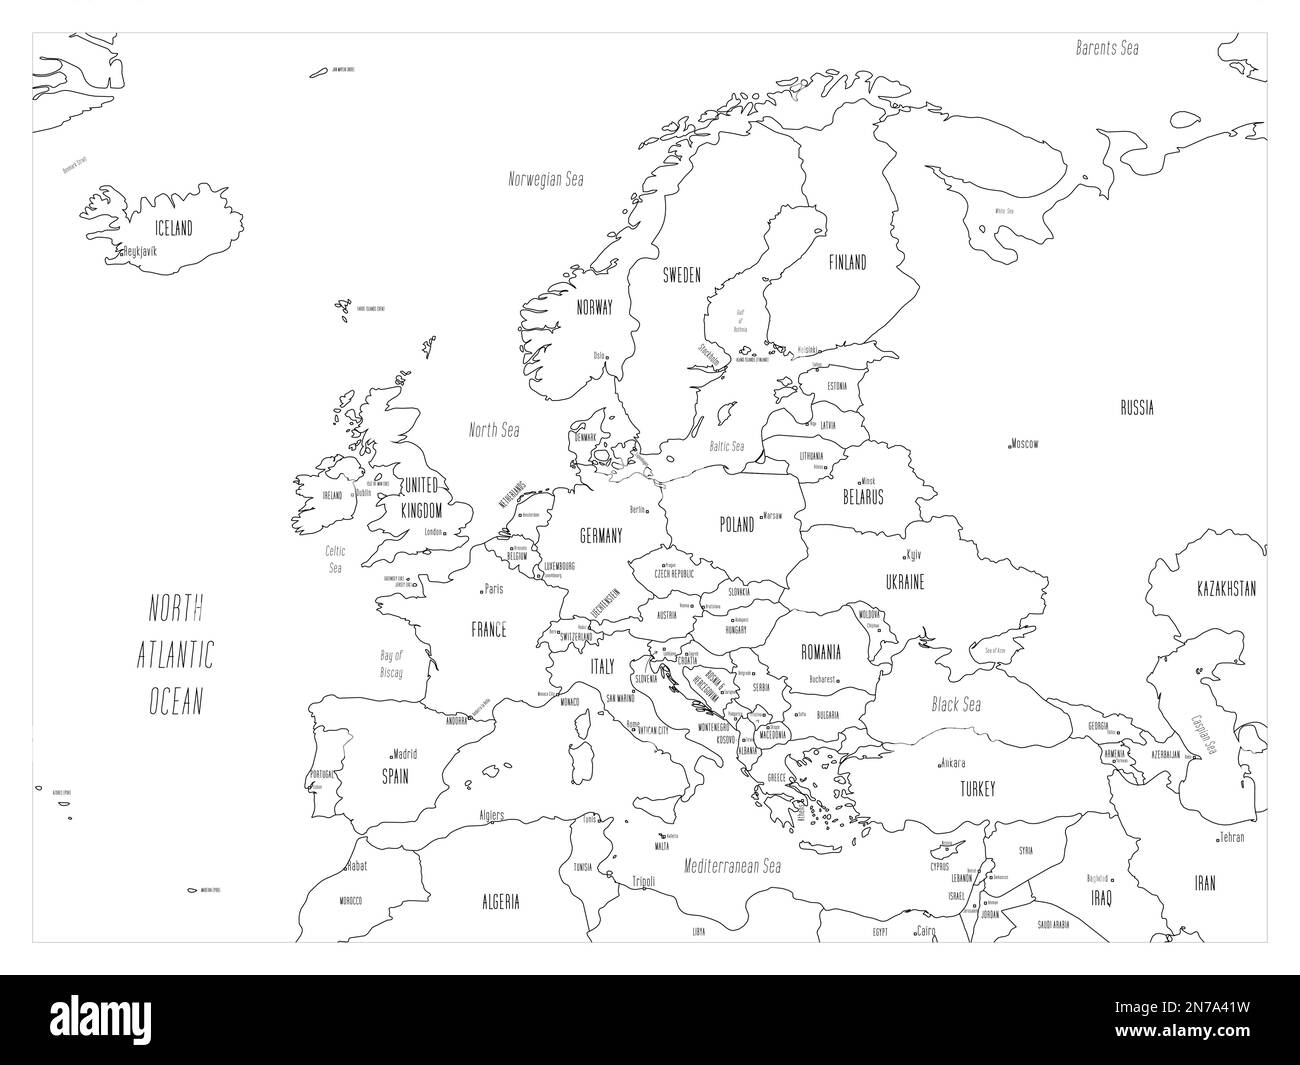 Politische Karte Europas. Schwarzer Umriss, handgezeichnete Zeichentrickkarte mit Bathymetrie. Handgeschriebene Etiketten mit Namen für Land, Hauptstadt, Meer und Ozean. Einfache flache Vektorzuordnung. Stock Vektor